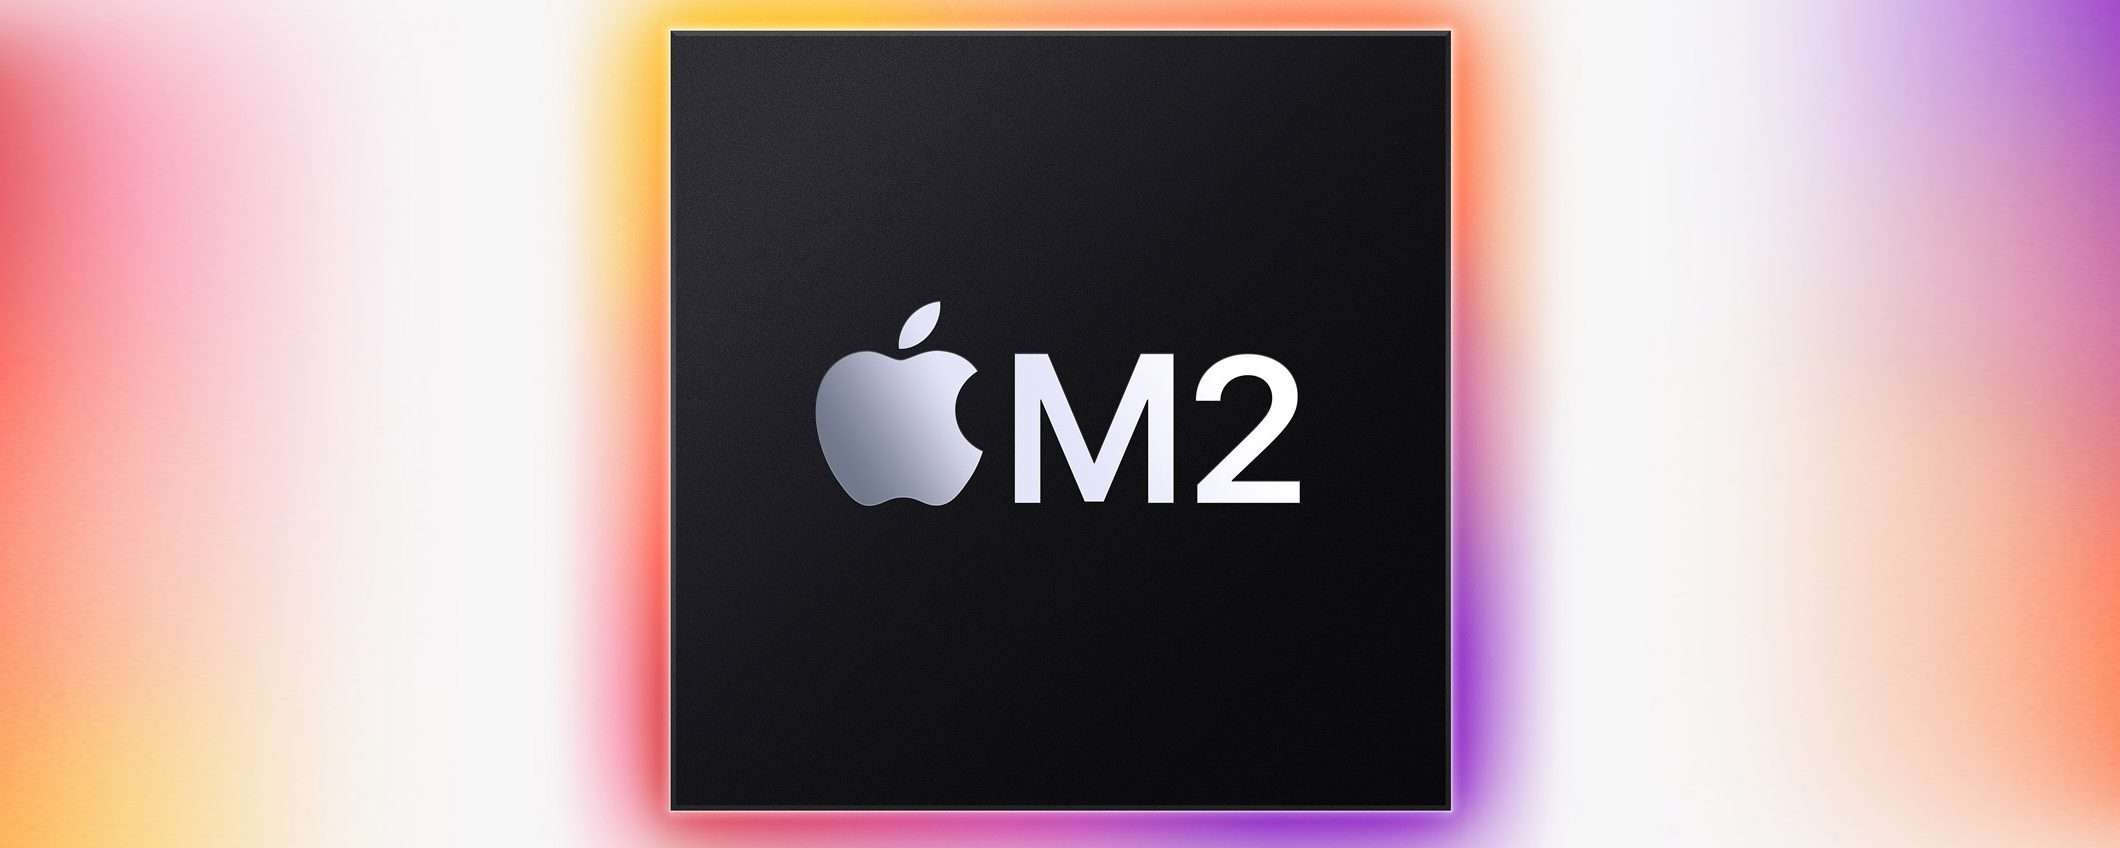 Apple: chip M2 nel visore per la realtà mista